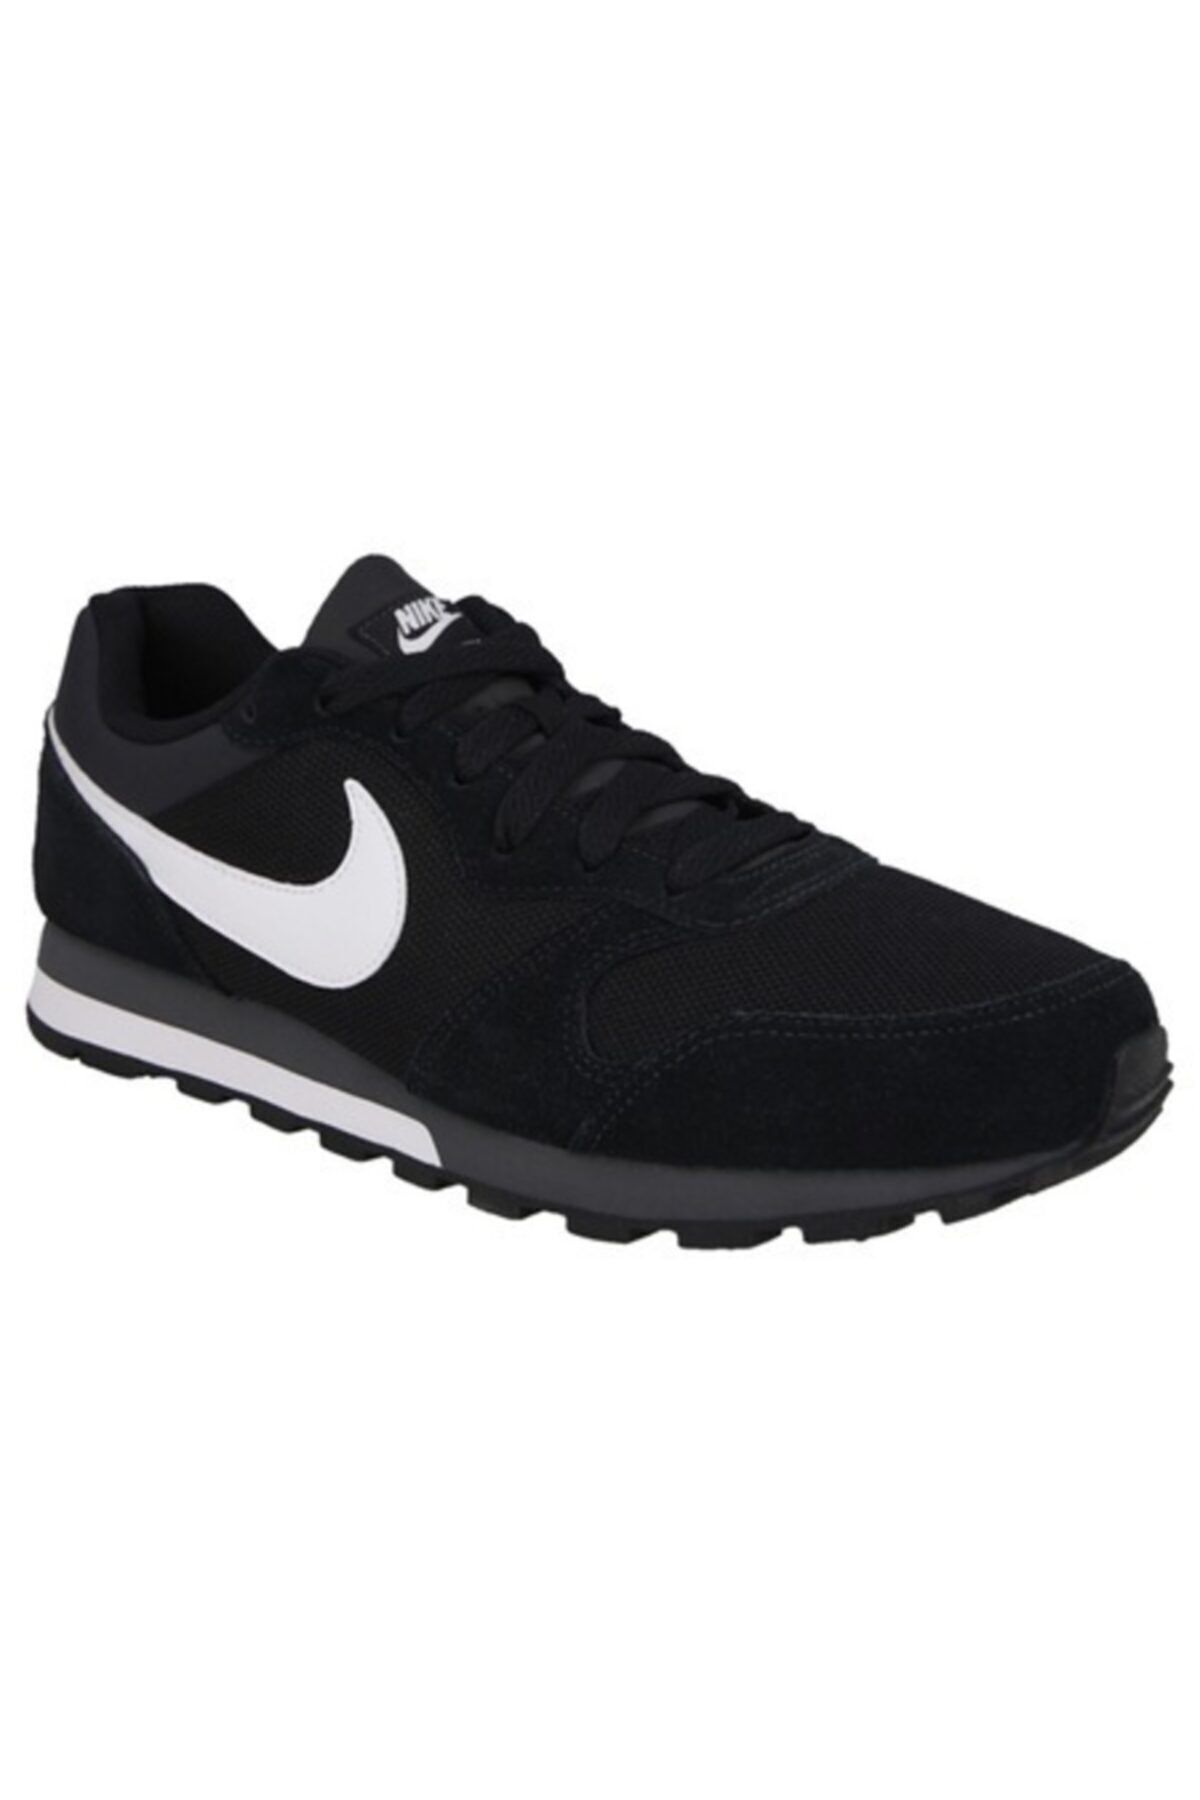 Nike Md Runner 2 Erkek Günlük Ayakkabı 749794-010